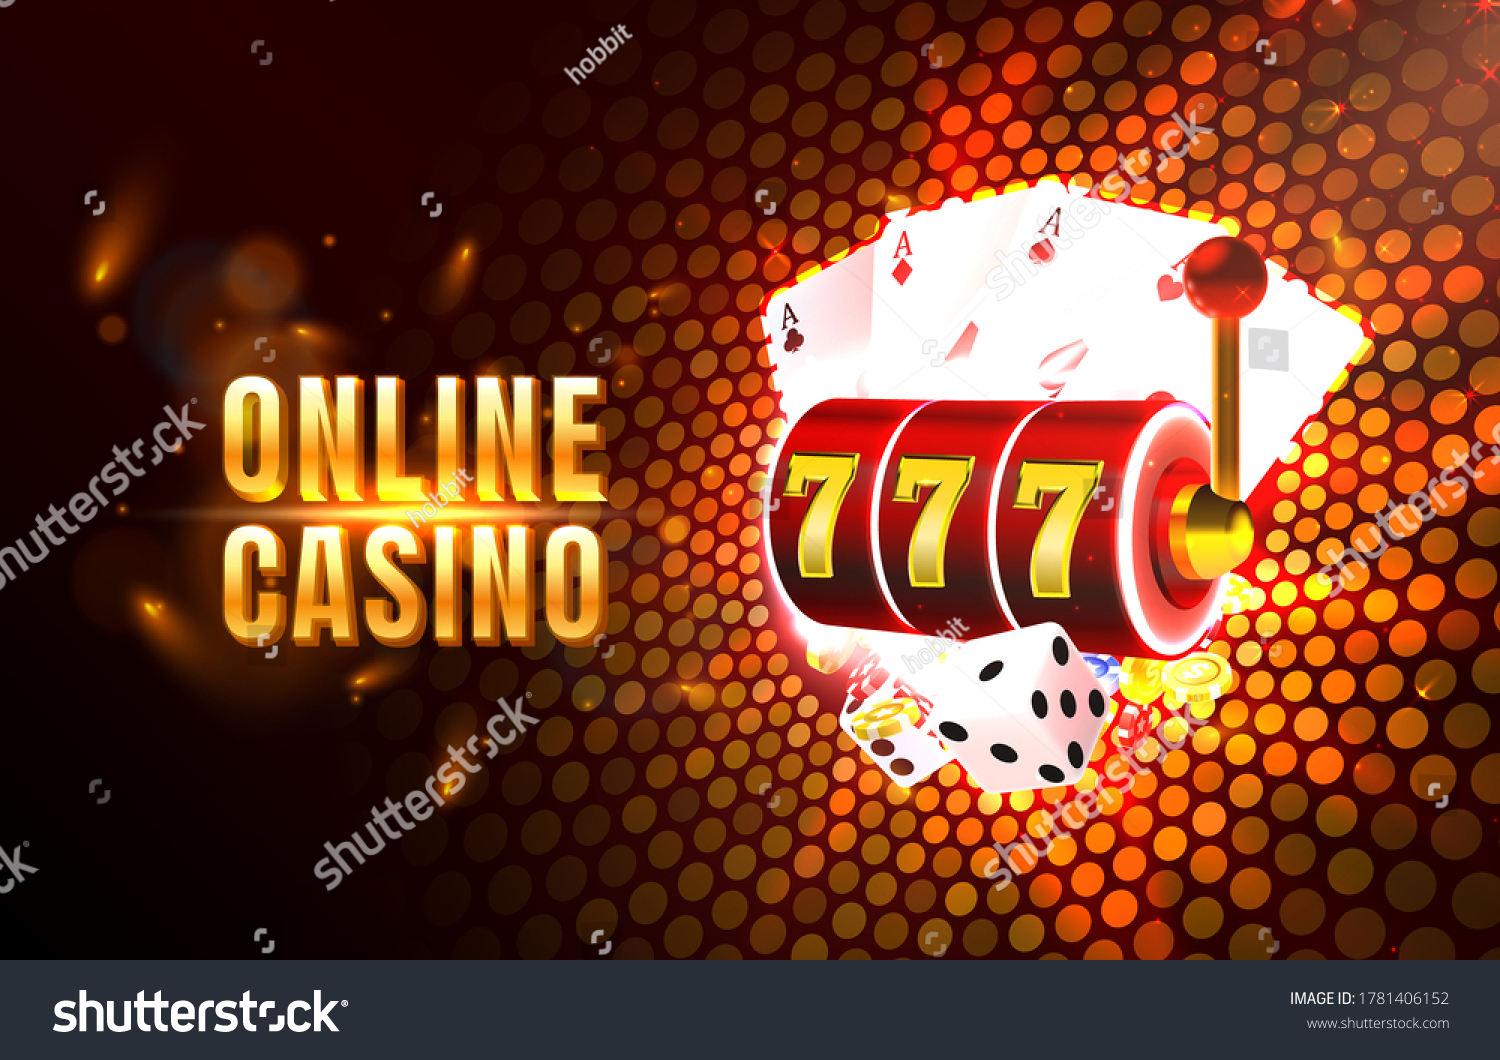 Голден казино онлайн казино онлайн игровые аппараты вулкан играть